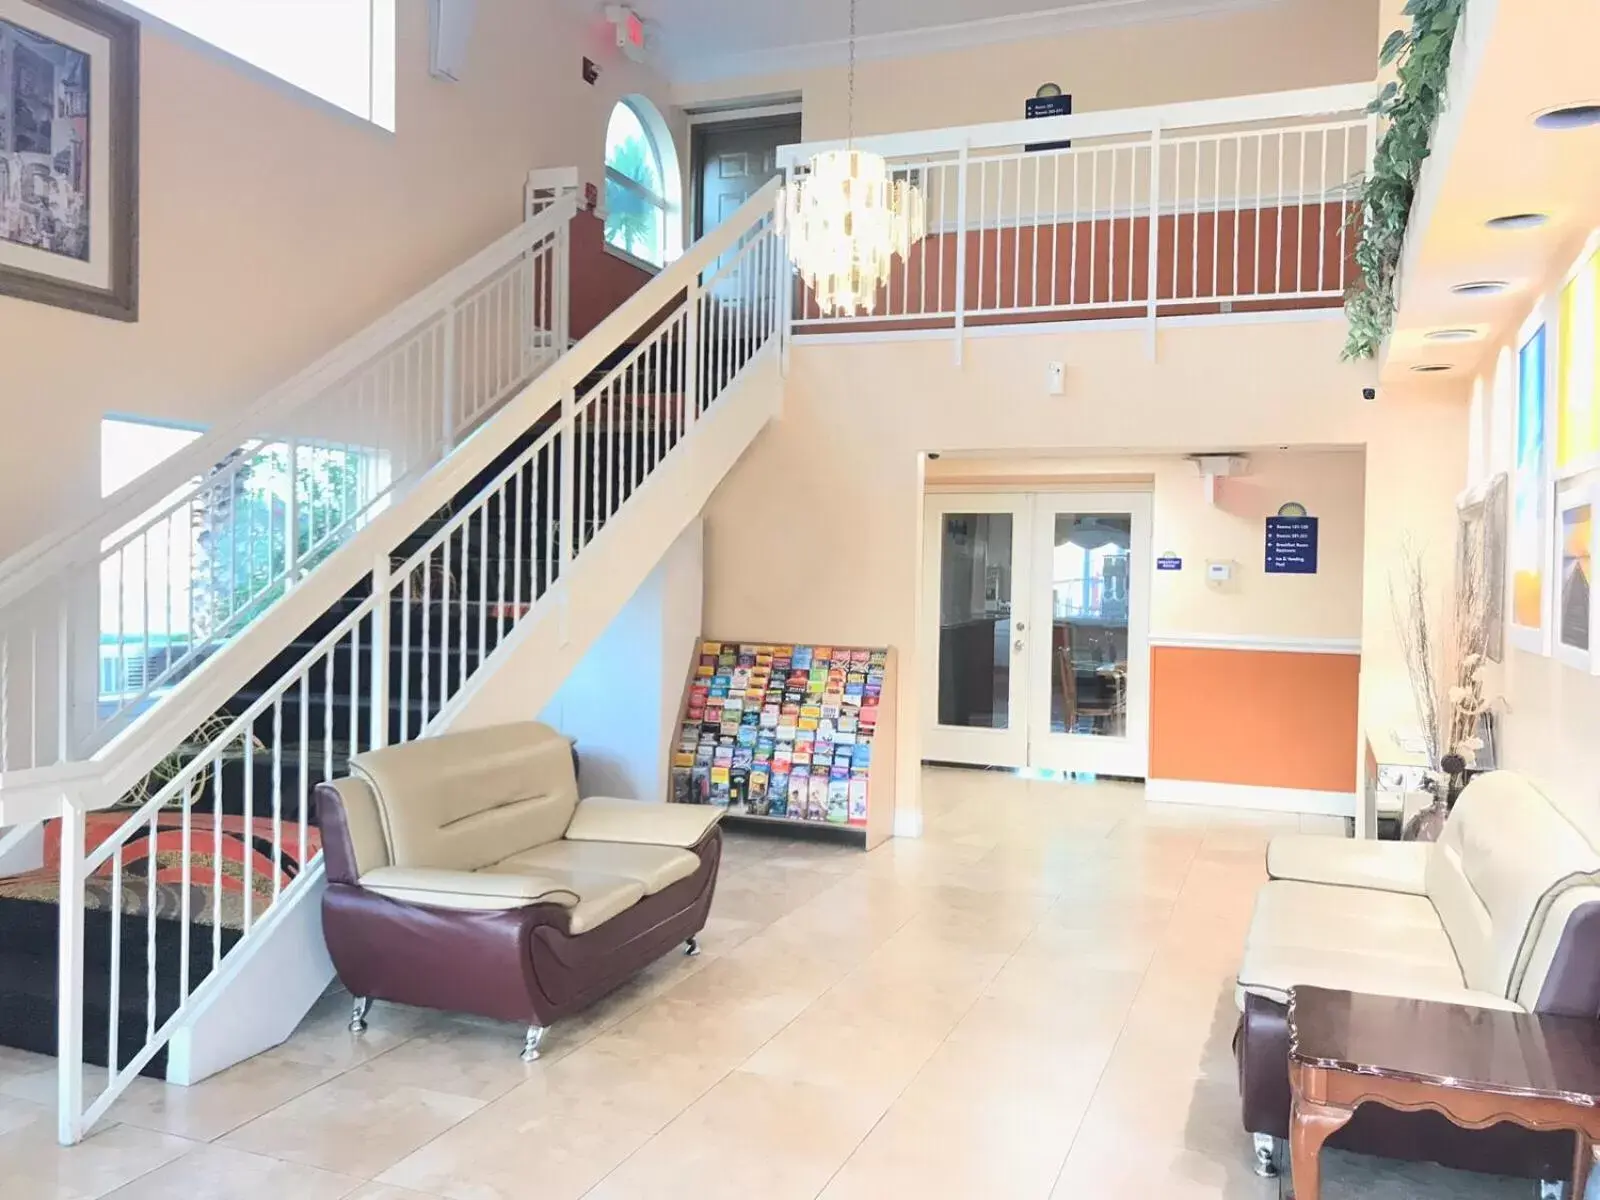 Lobby or reception, Lobby/Reception in Days Inn by Wyndham San Antonio Airport